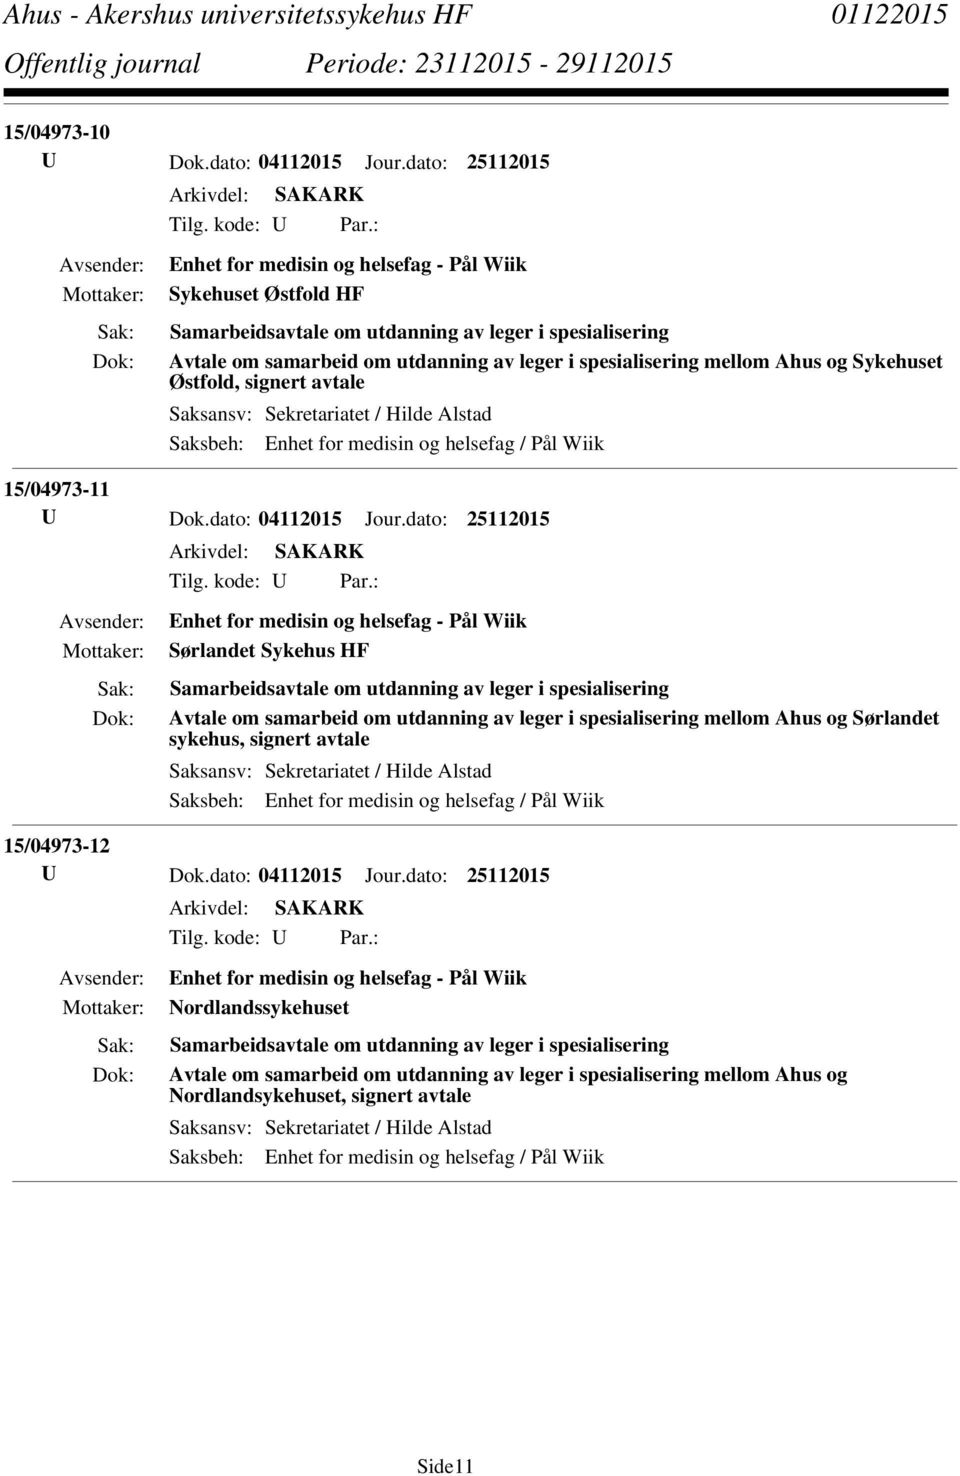 leger i spesialisering mellom Ahus og Sørlandet sykehus, signert avtale 15/04973-12 Nordlandssykehuset